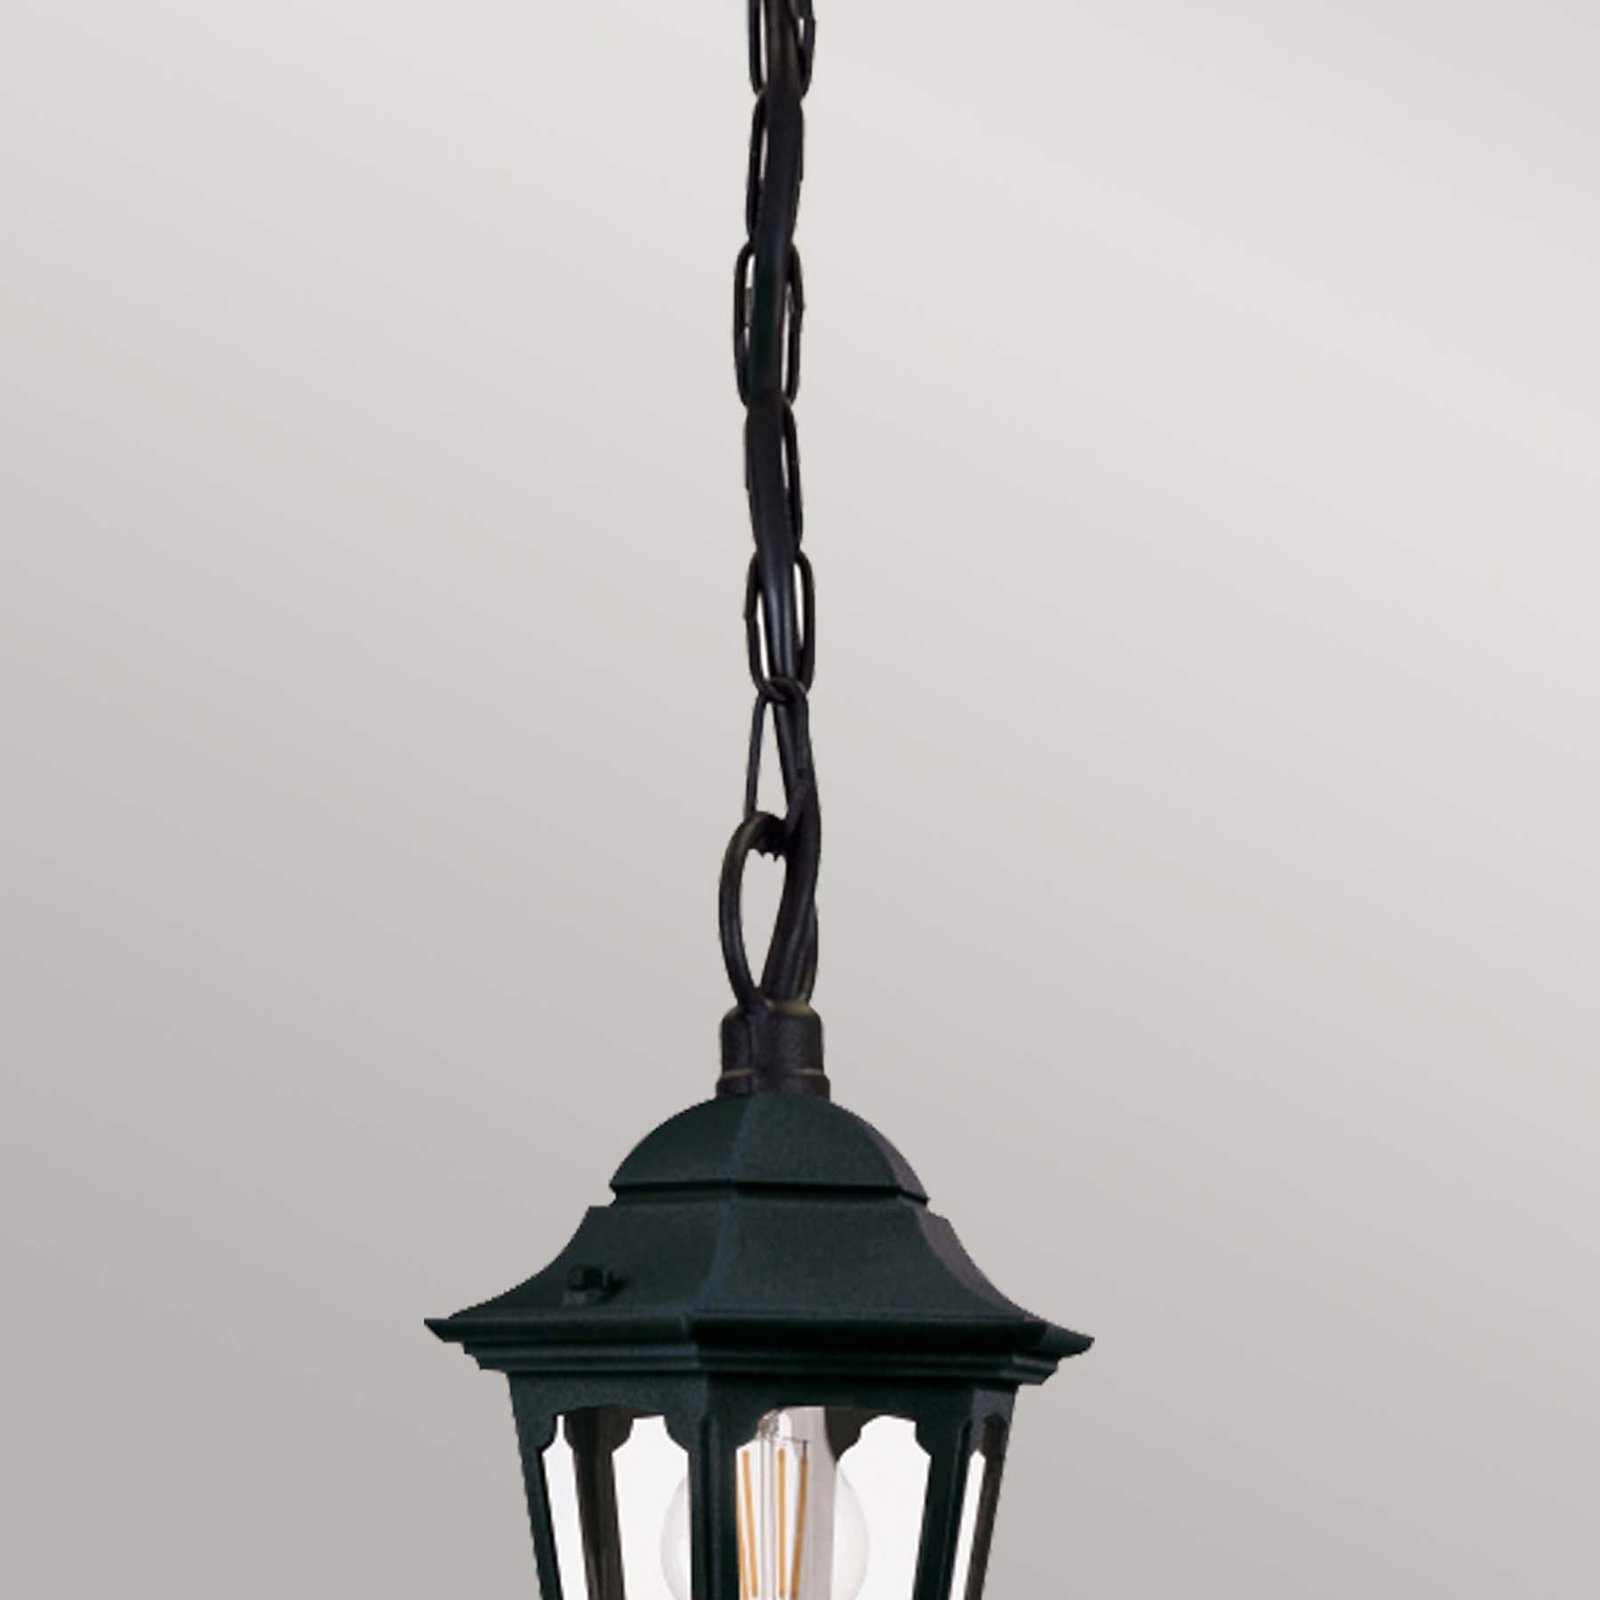 Parish Mini pendant light with chain suspension, height 34.5 cm